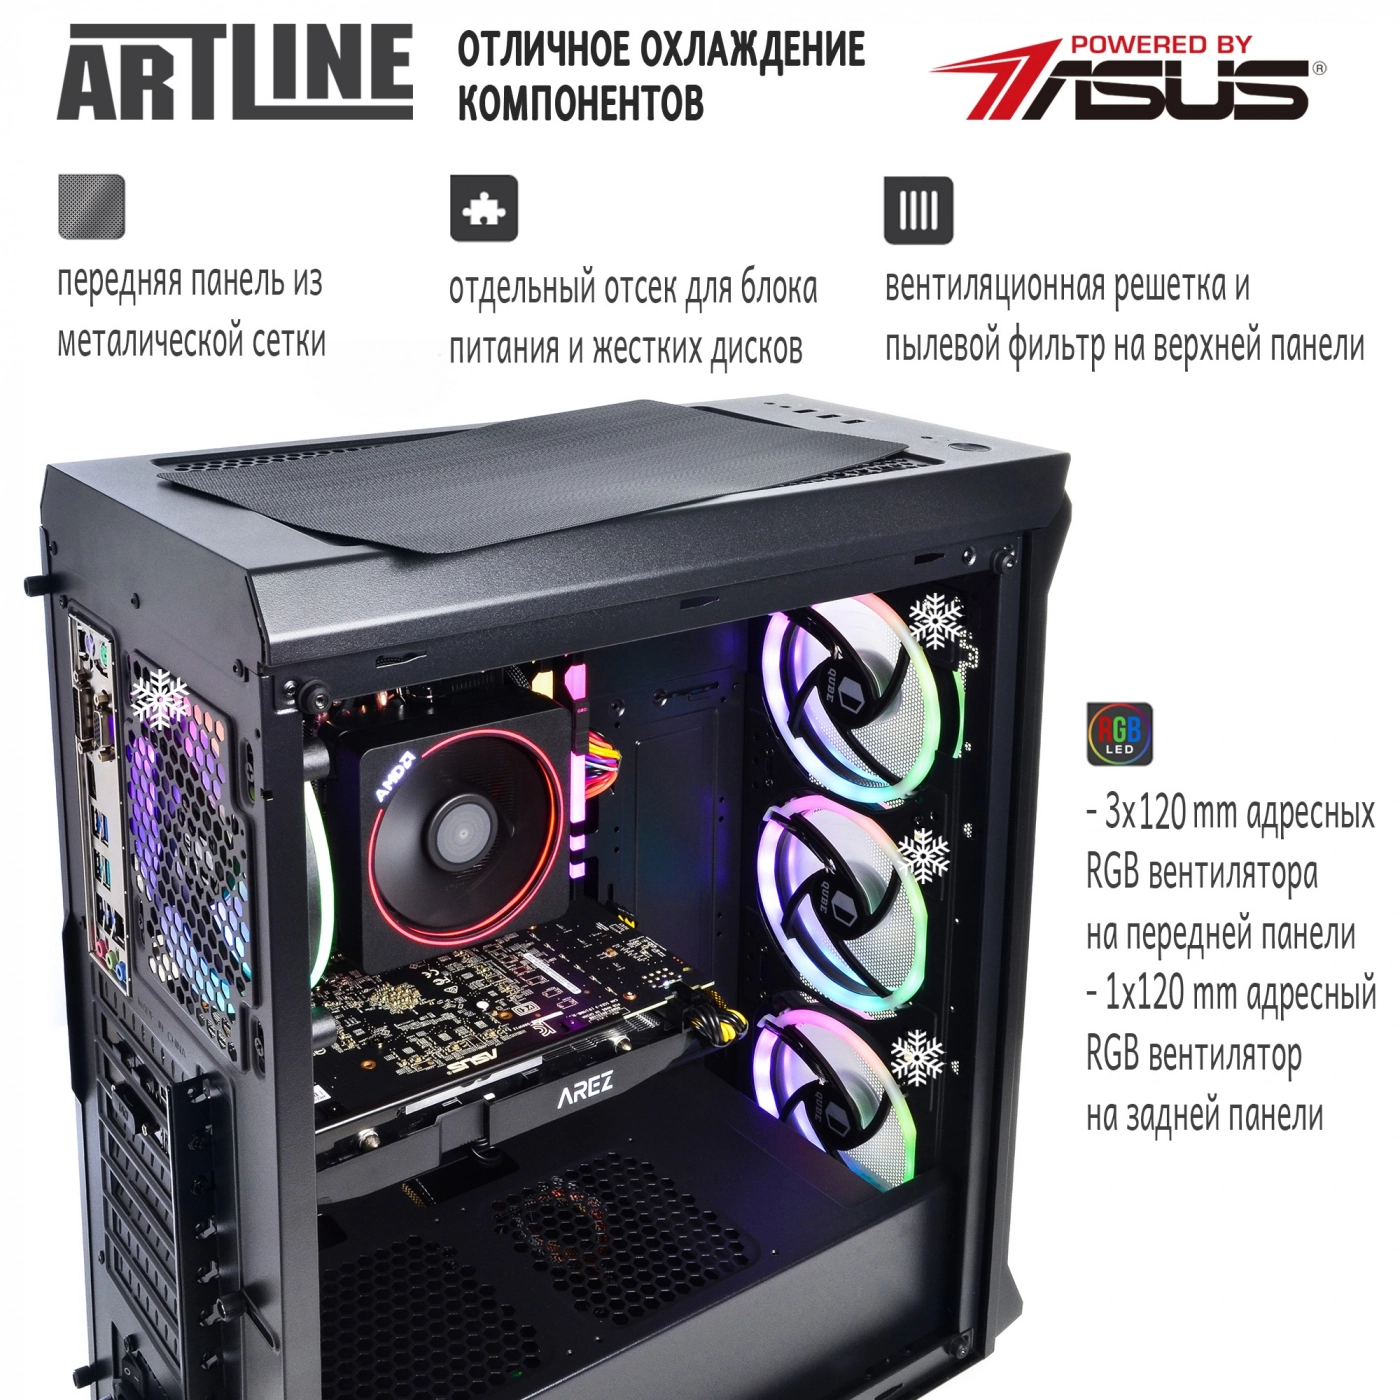 Купить Компьютер ARTLINE Gaming X83v02 - фото 2